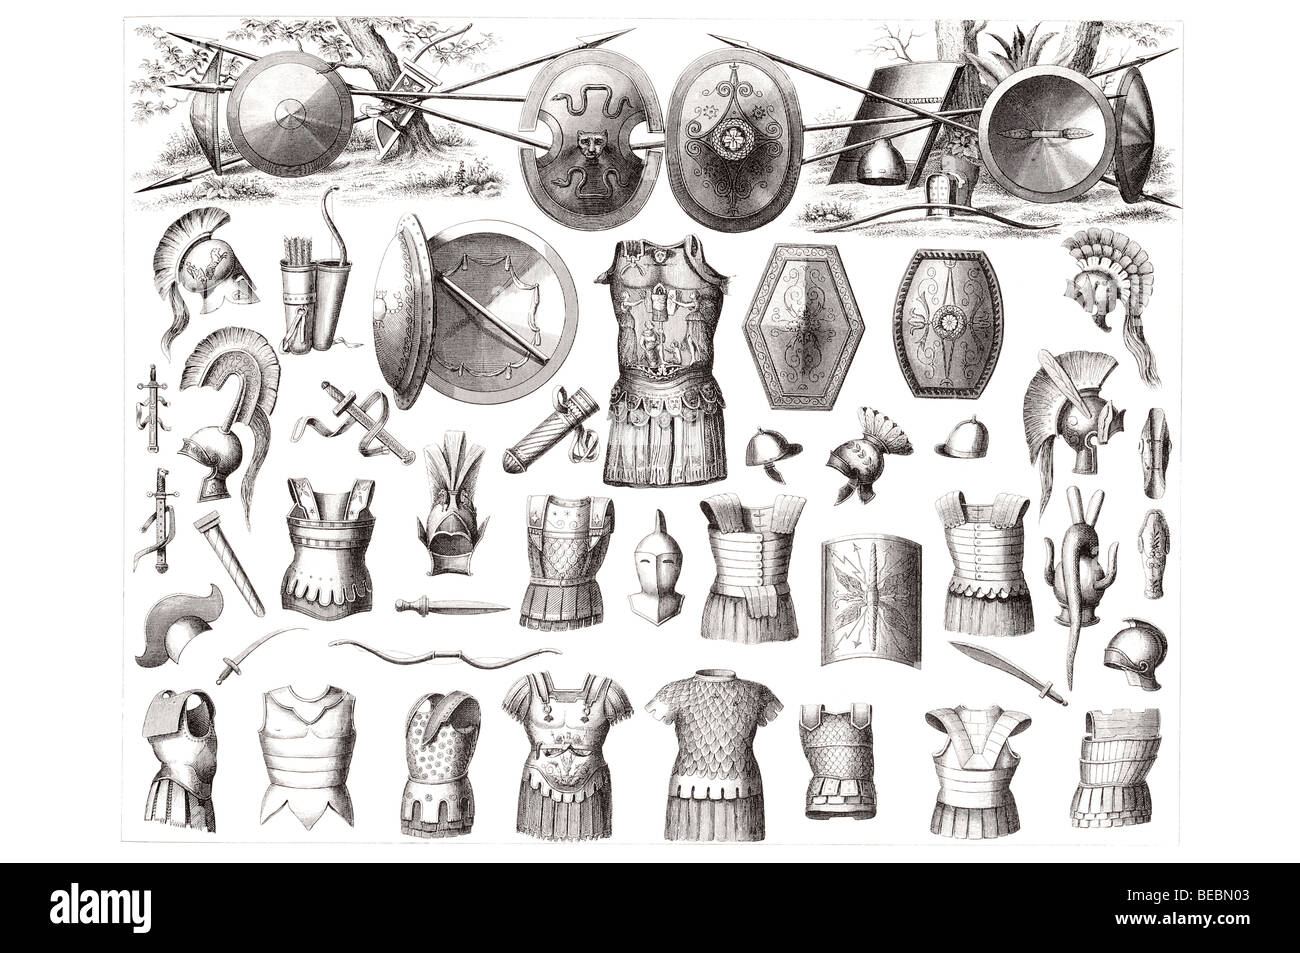 Las armas de los griegos, etruscos y romanos. Foto de stock